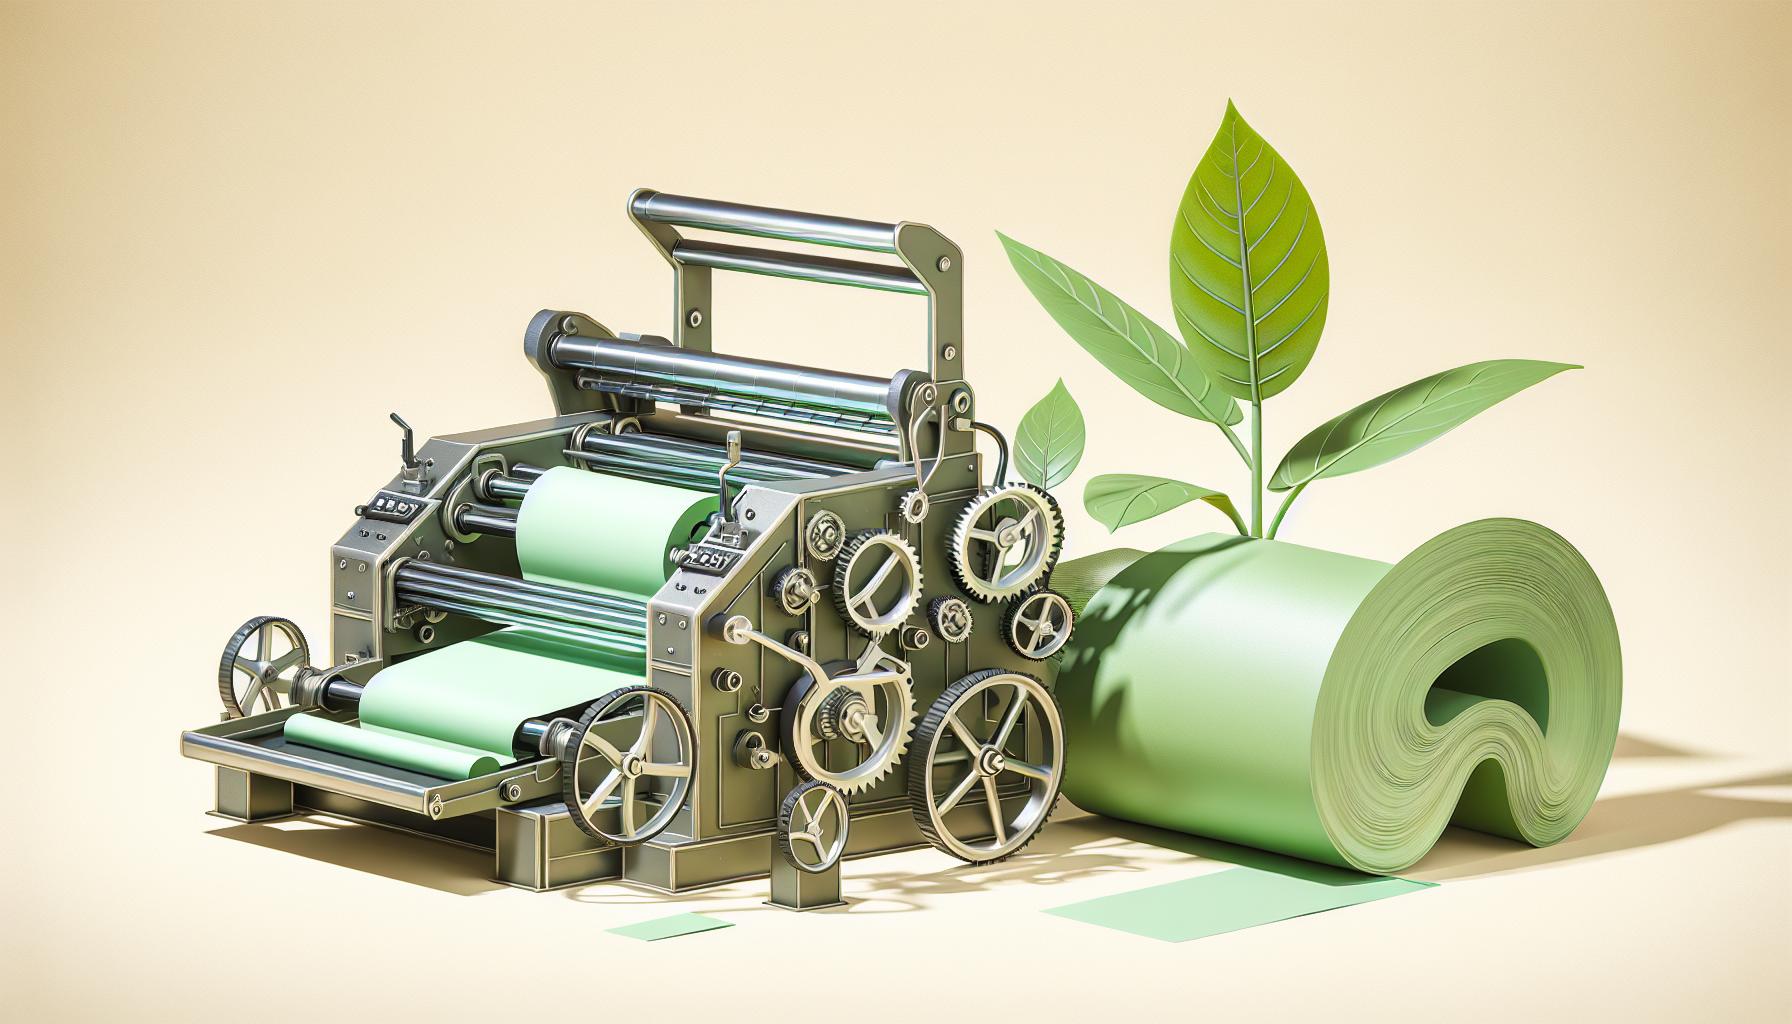 grafika: druk na materialach biodegradowalnych